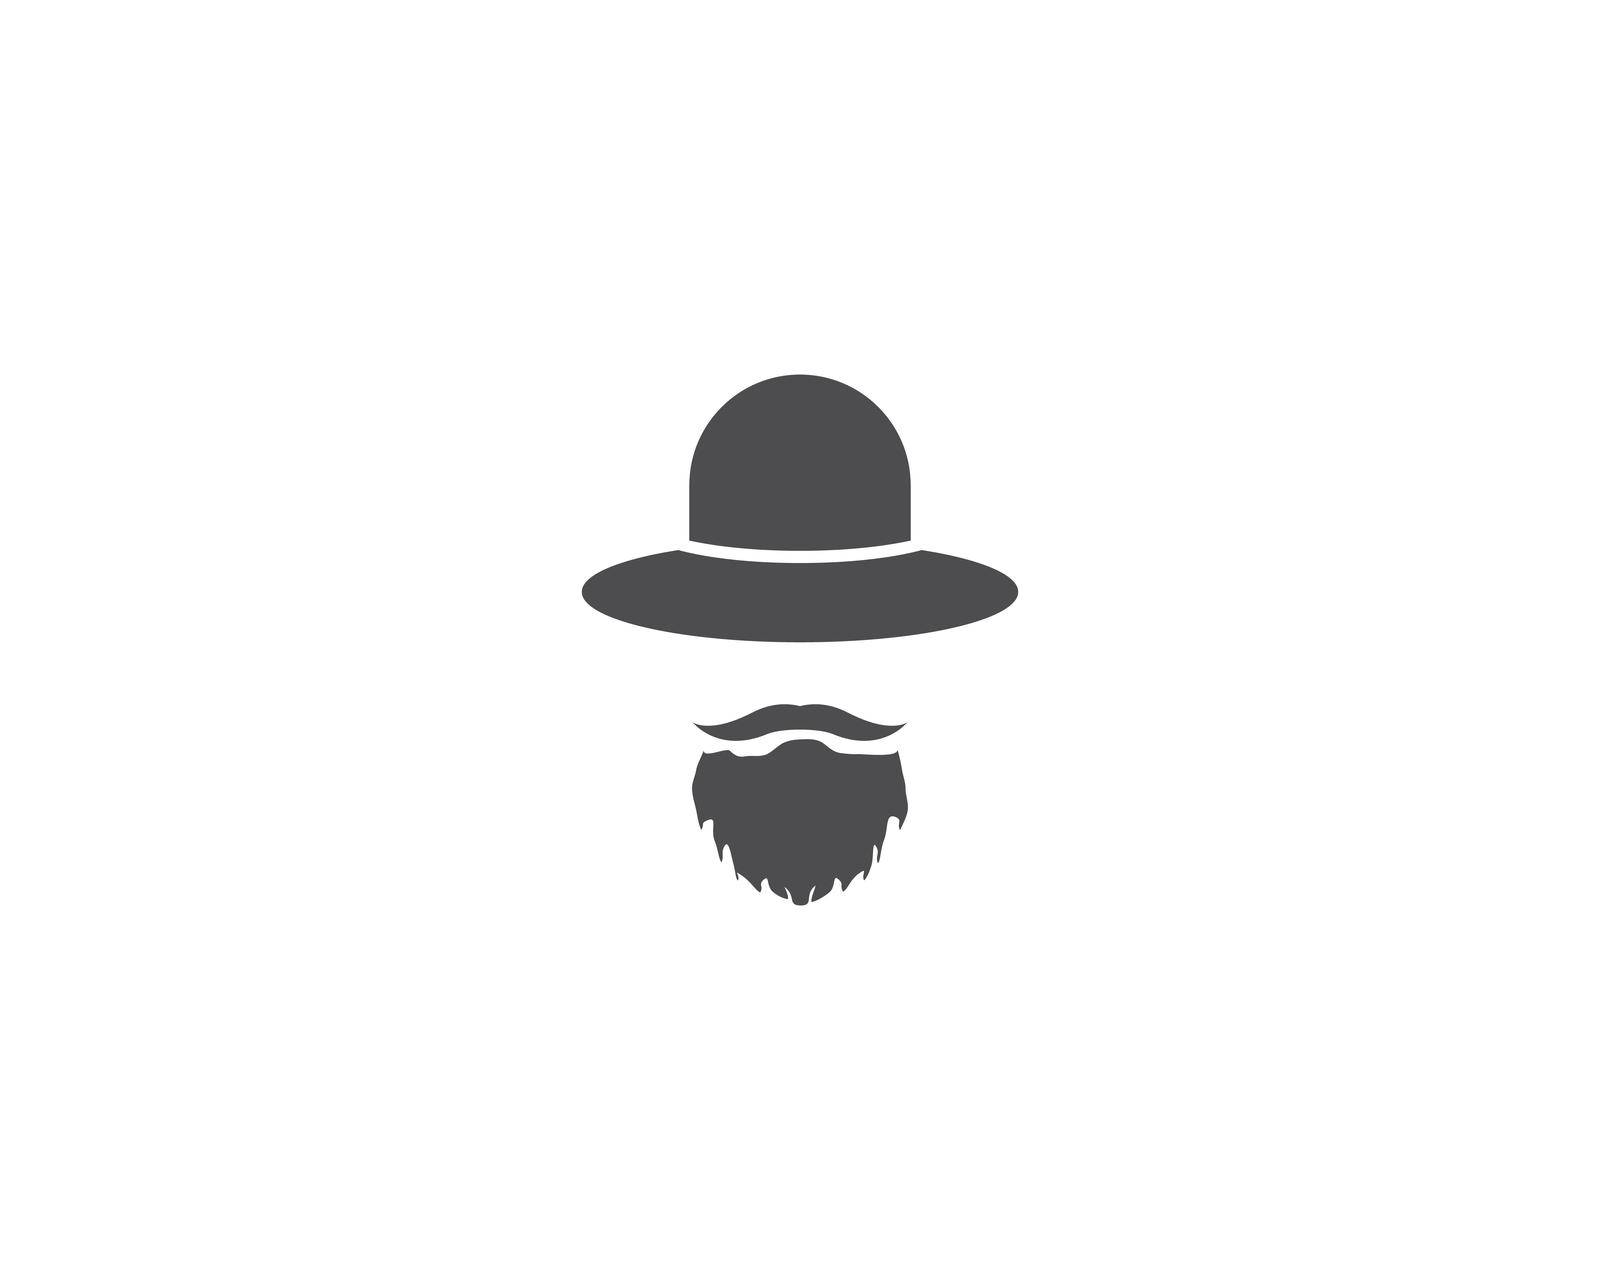 Gentleman Tuxedo logo vector by awk